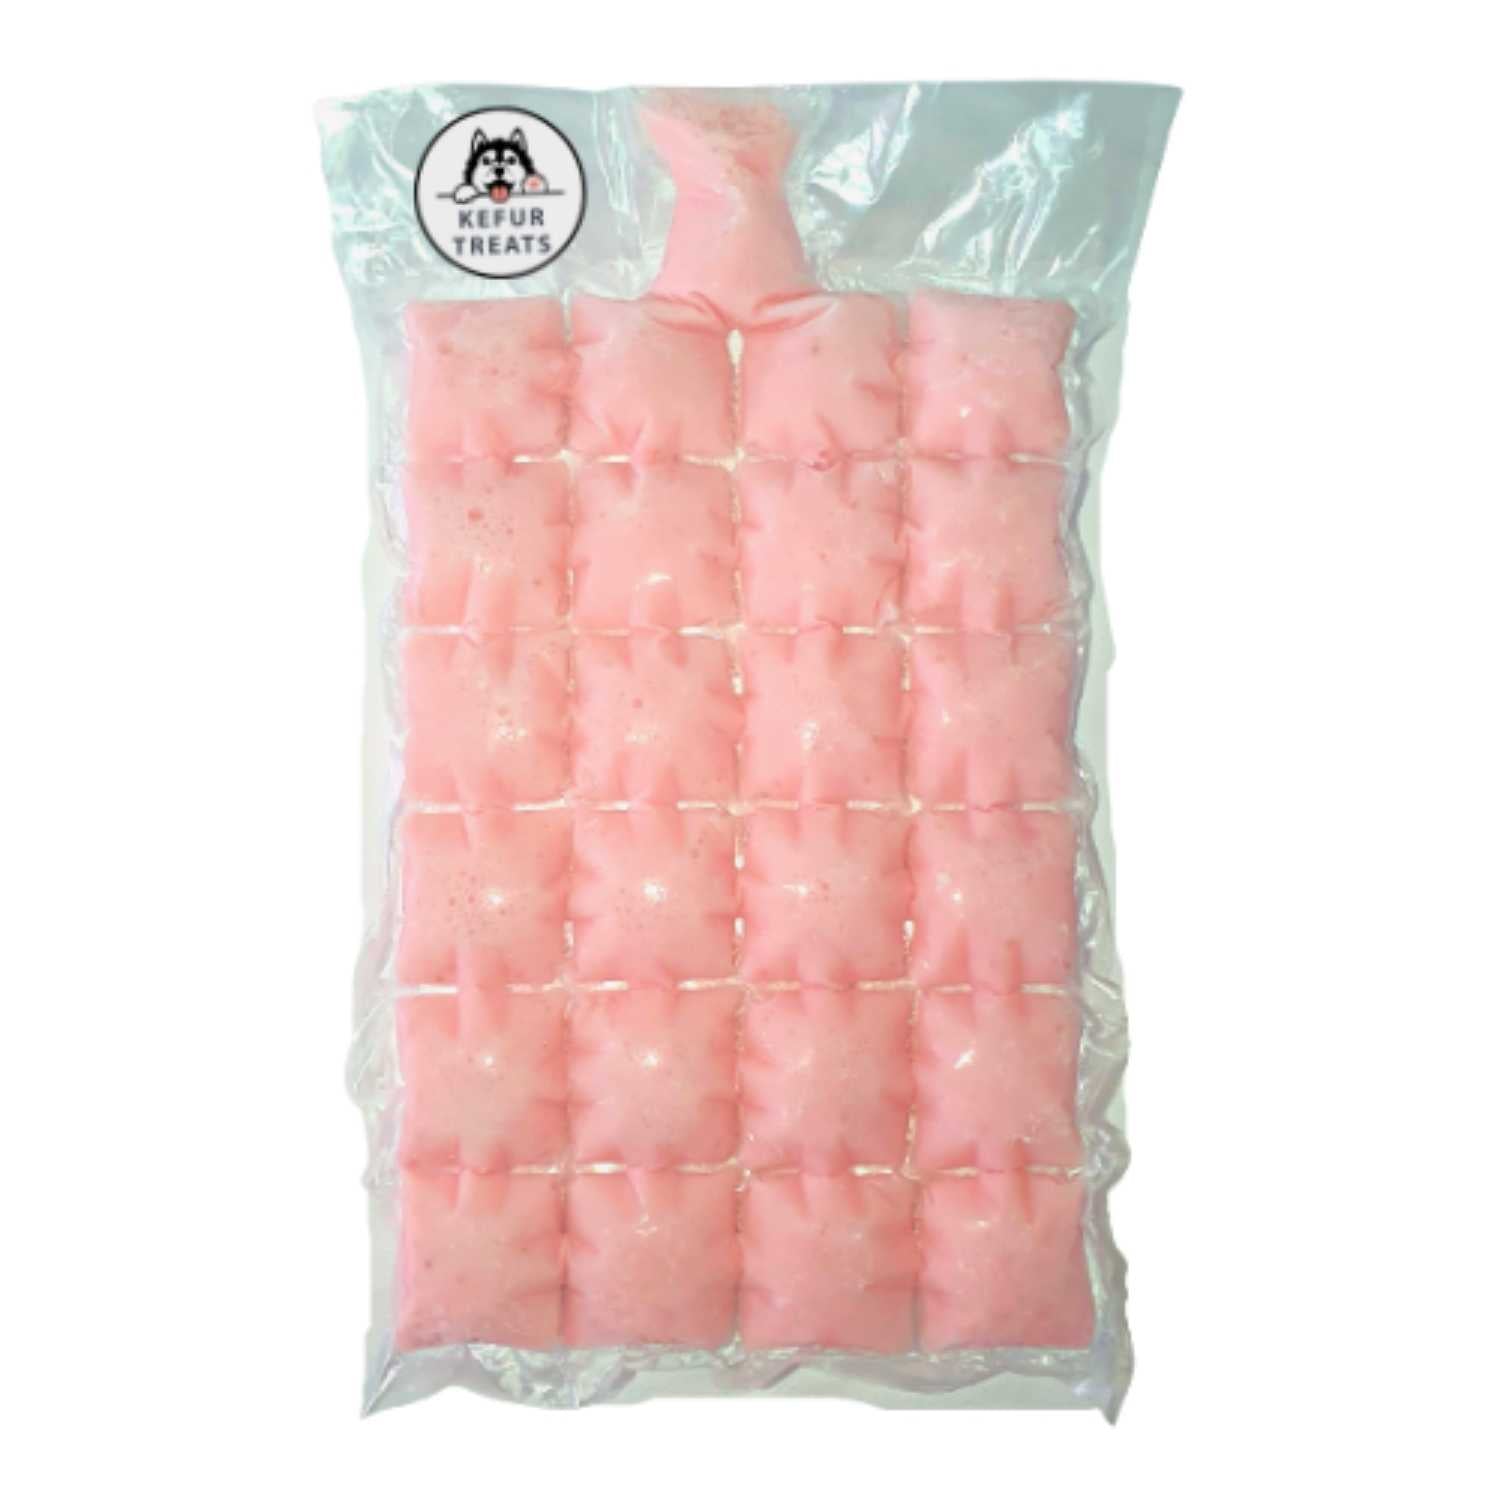 KEFUR TREATS - STRAWBERRY Goat Milk Kefir Frozen Pack (24 Cubes) - Pet Treats